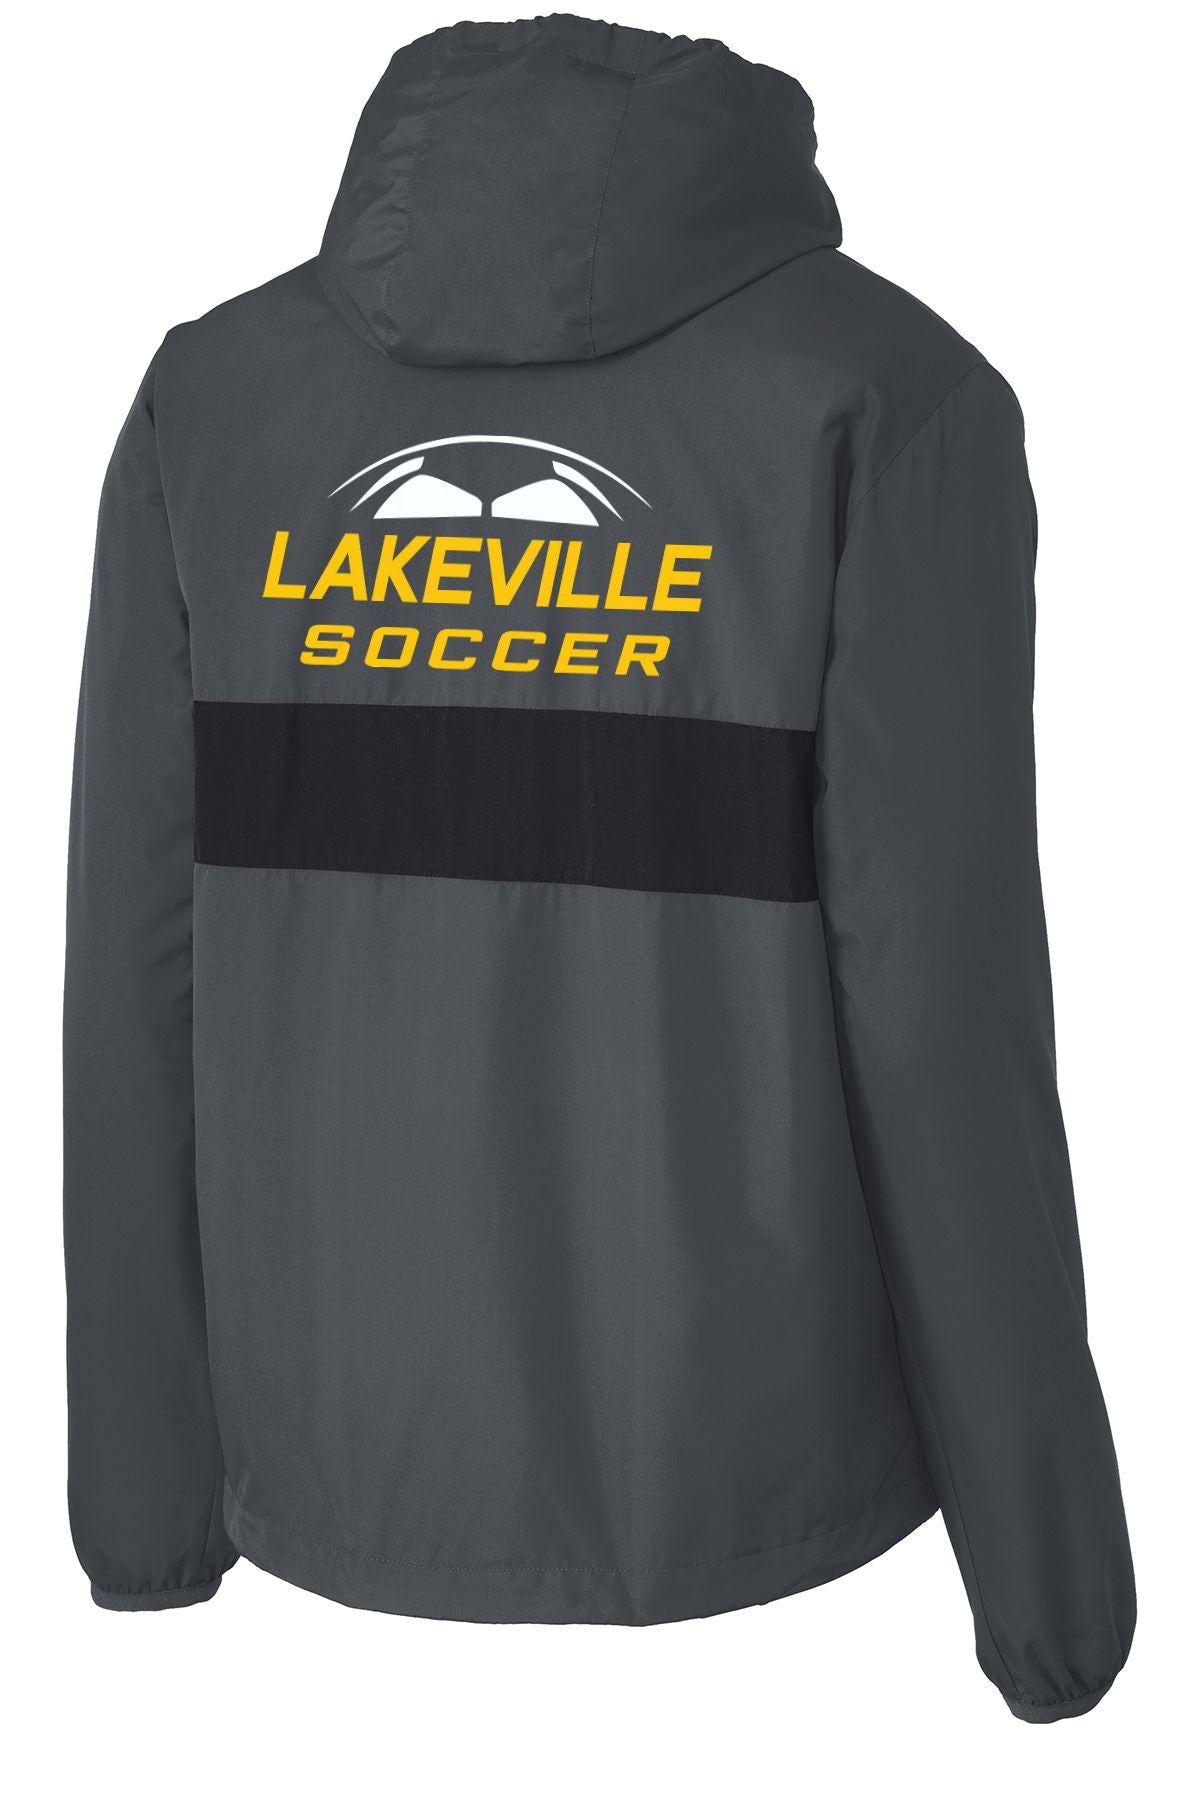 Lakeville Soccer Zipped Pocket Anorak